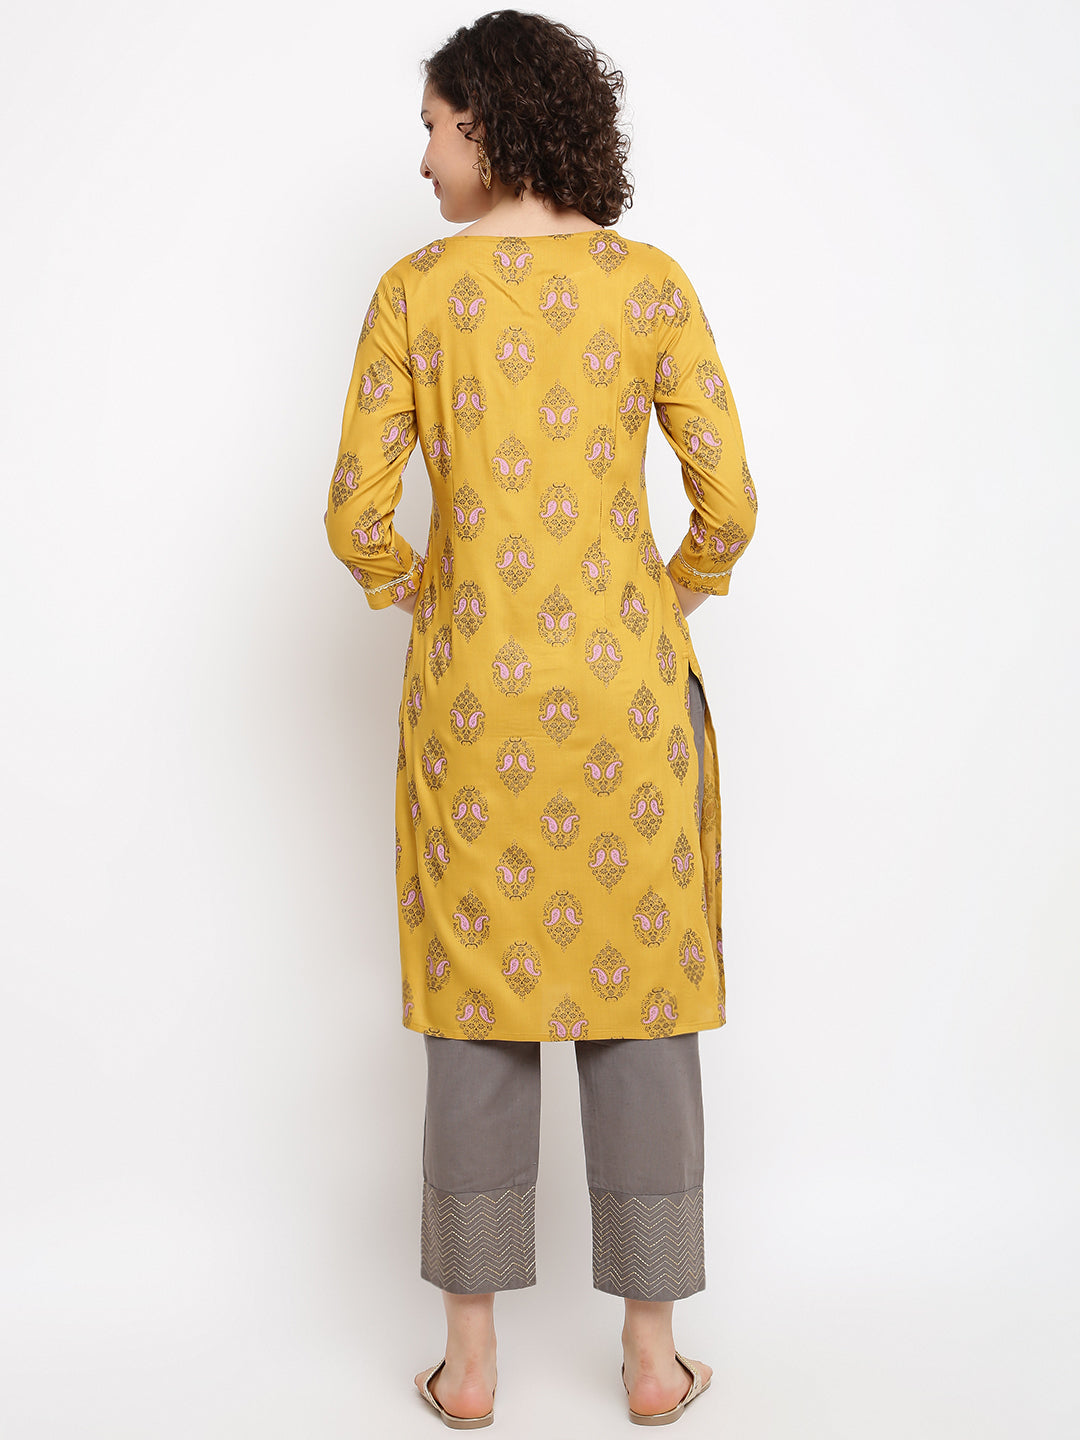 Women's Printed Yellow Musturd Kurta - IMARA